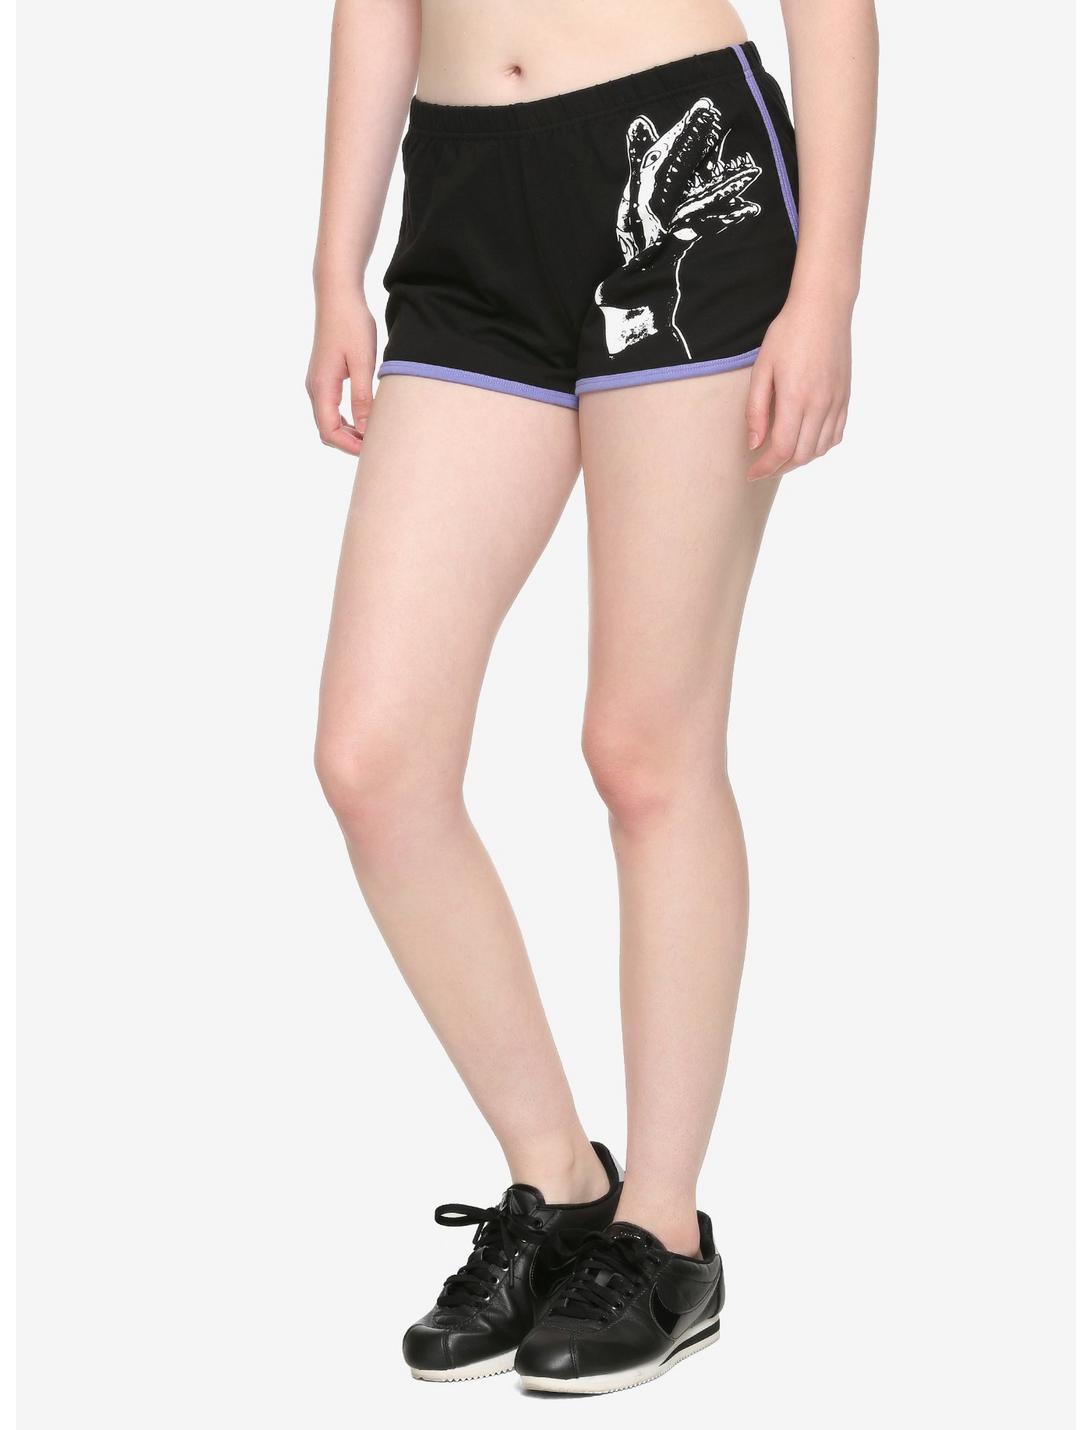 Beetlejuice Sandworm Girls Soft Shorts, BLACK, hi-res